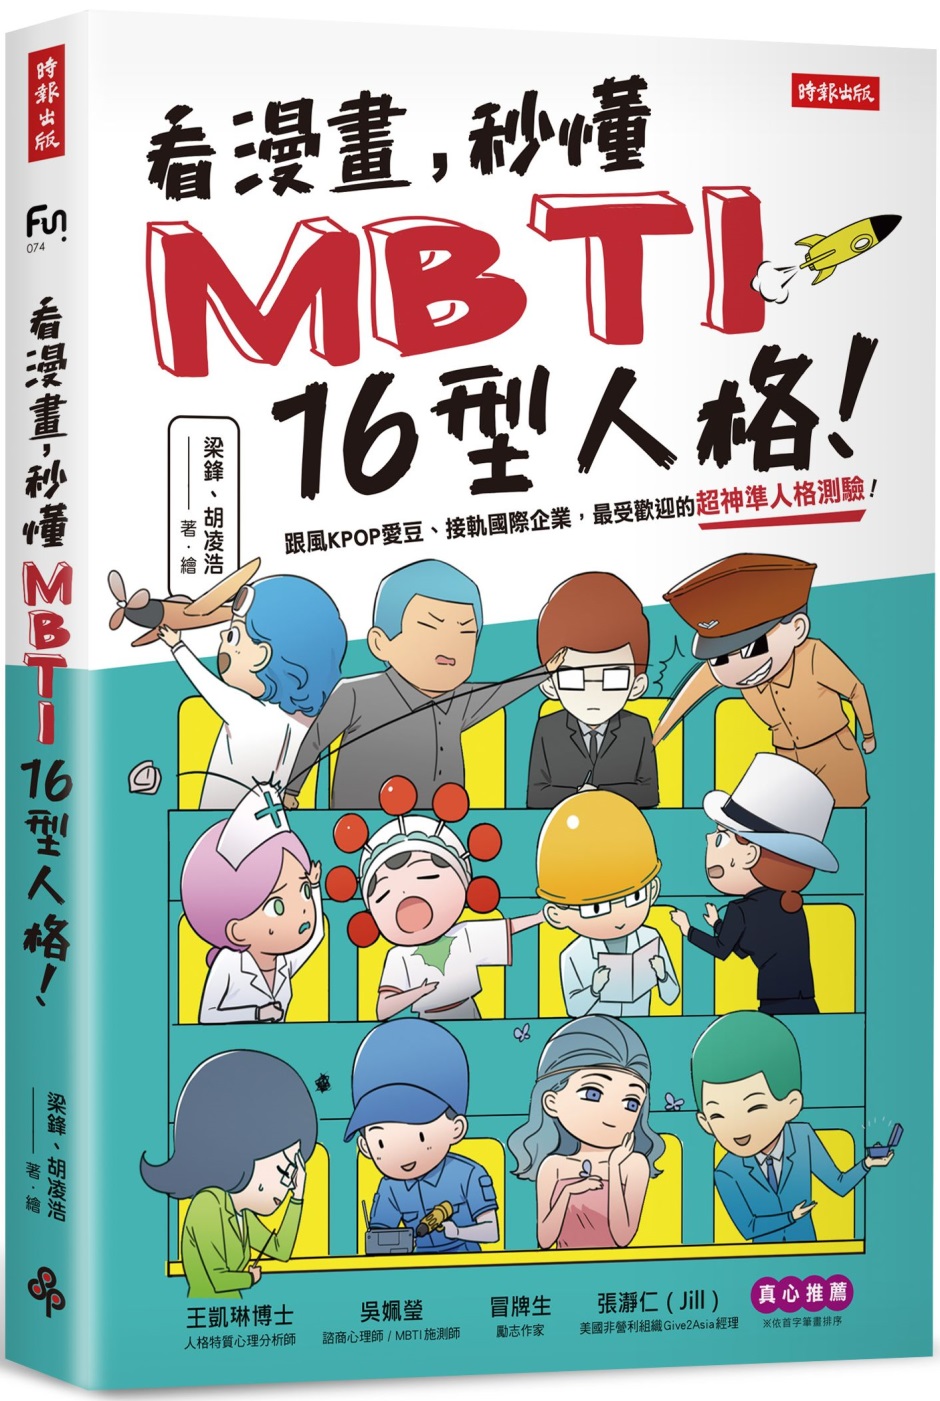 看漫畫 秒懂mbti 16型人格 被動收入的投資秘訣 21年12月